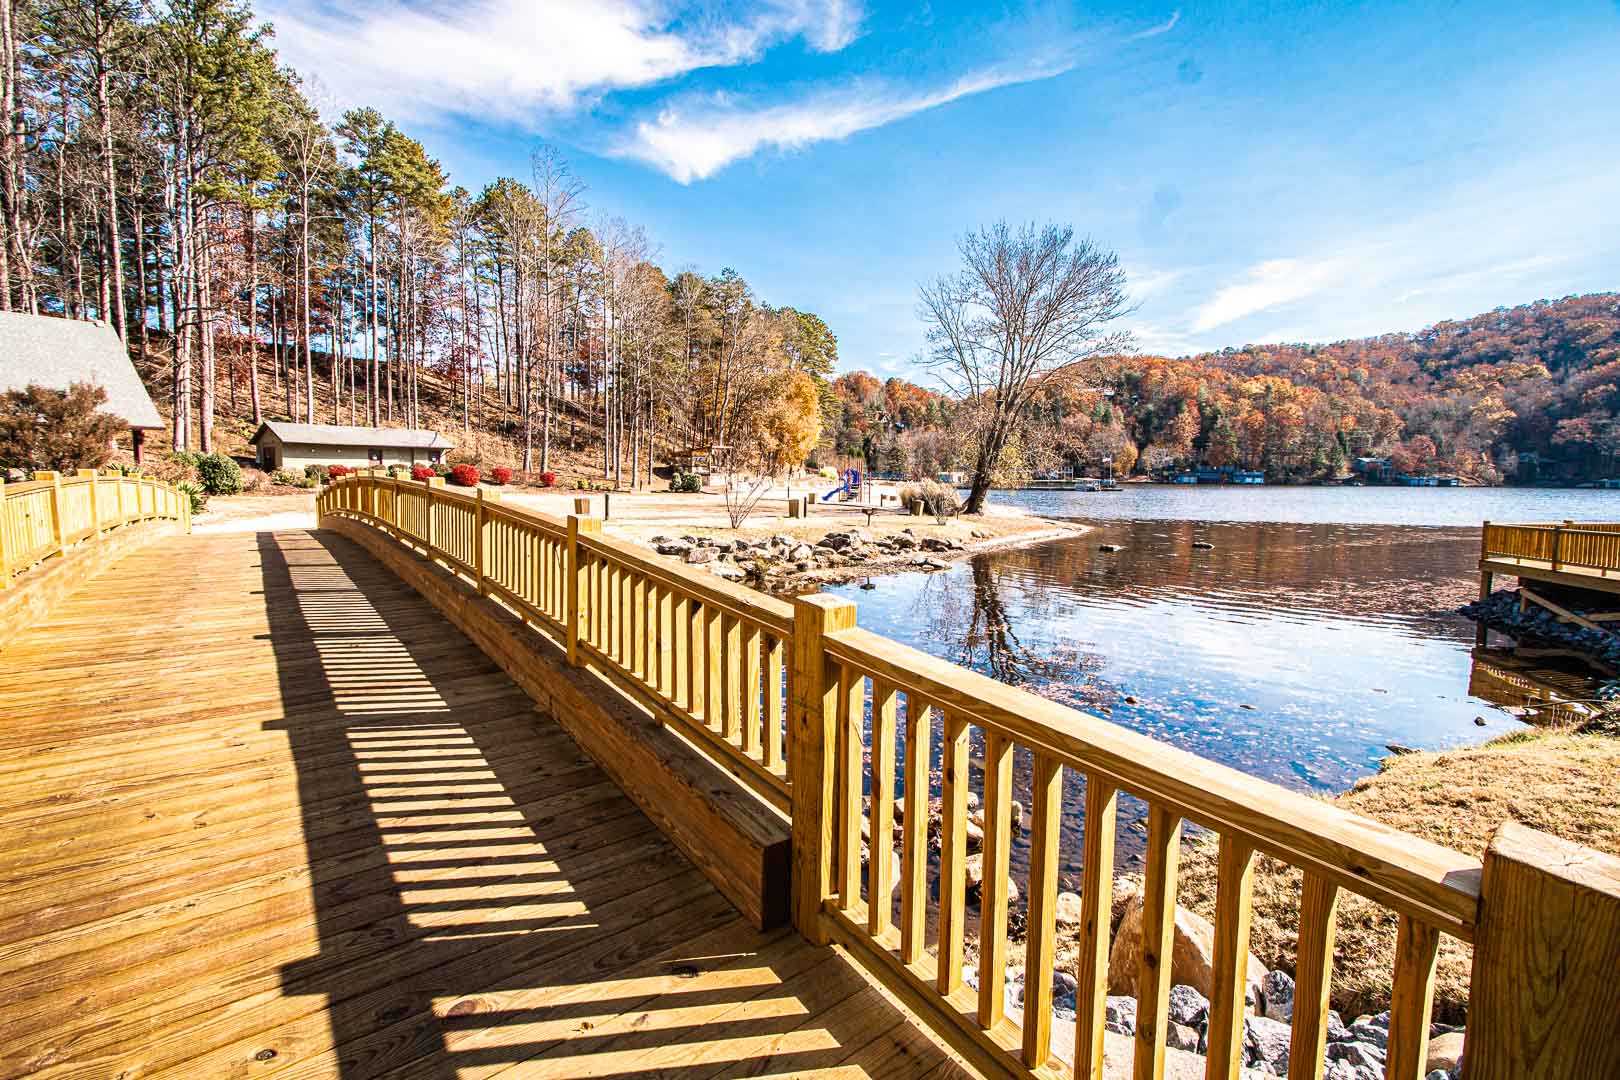 A scenic view at VRI's Fox Run Resort in North Carolina.